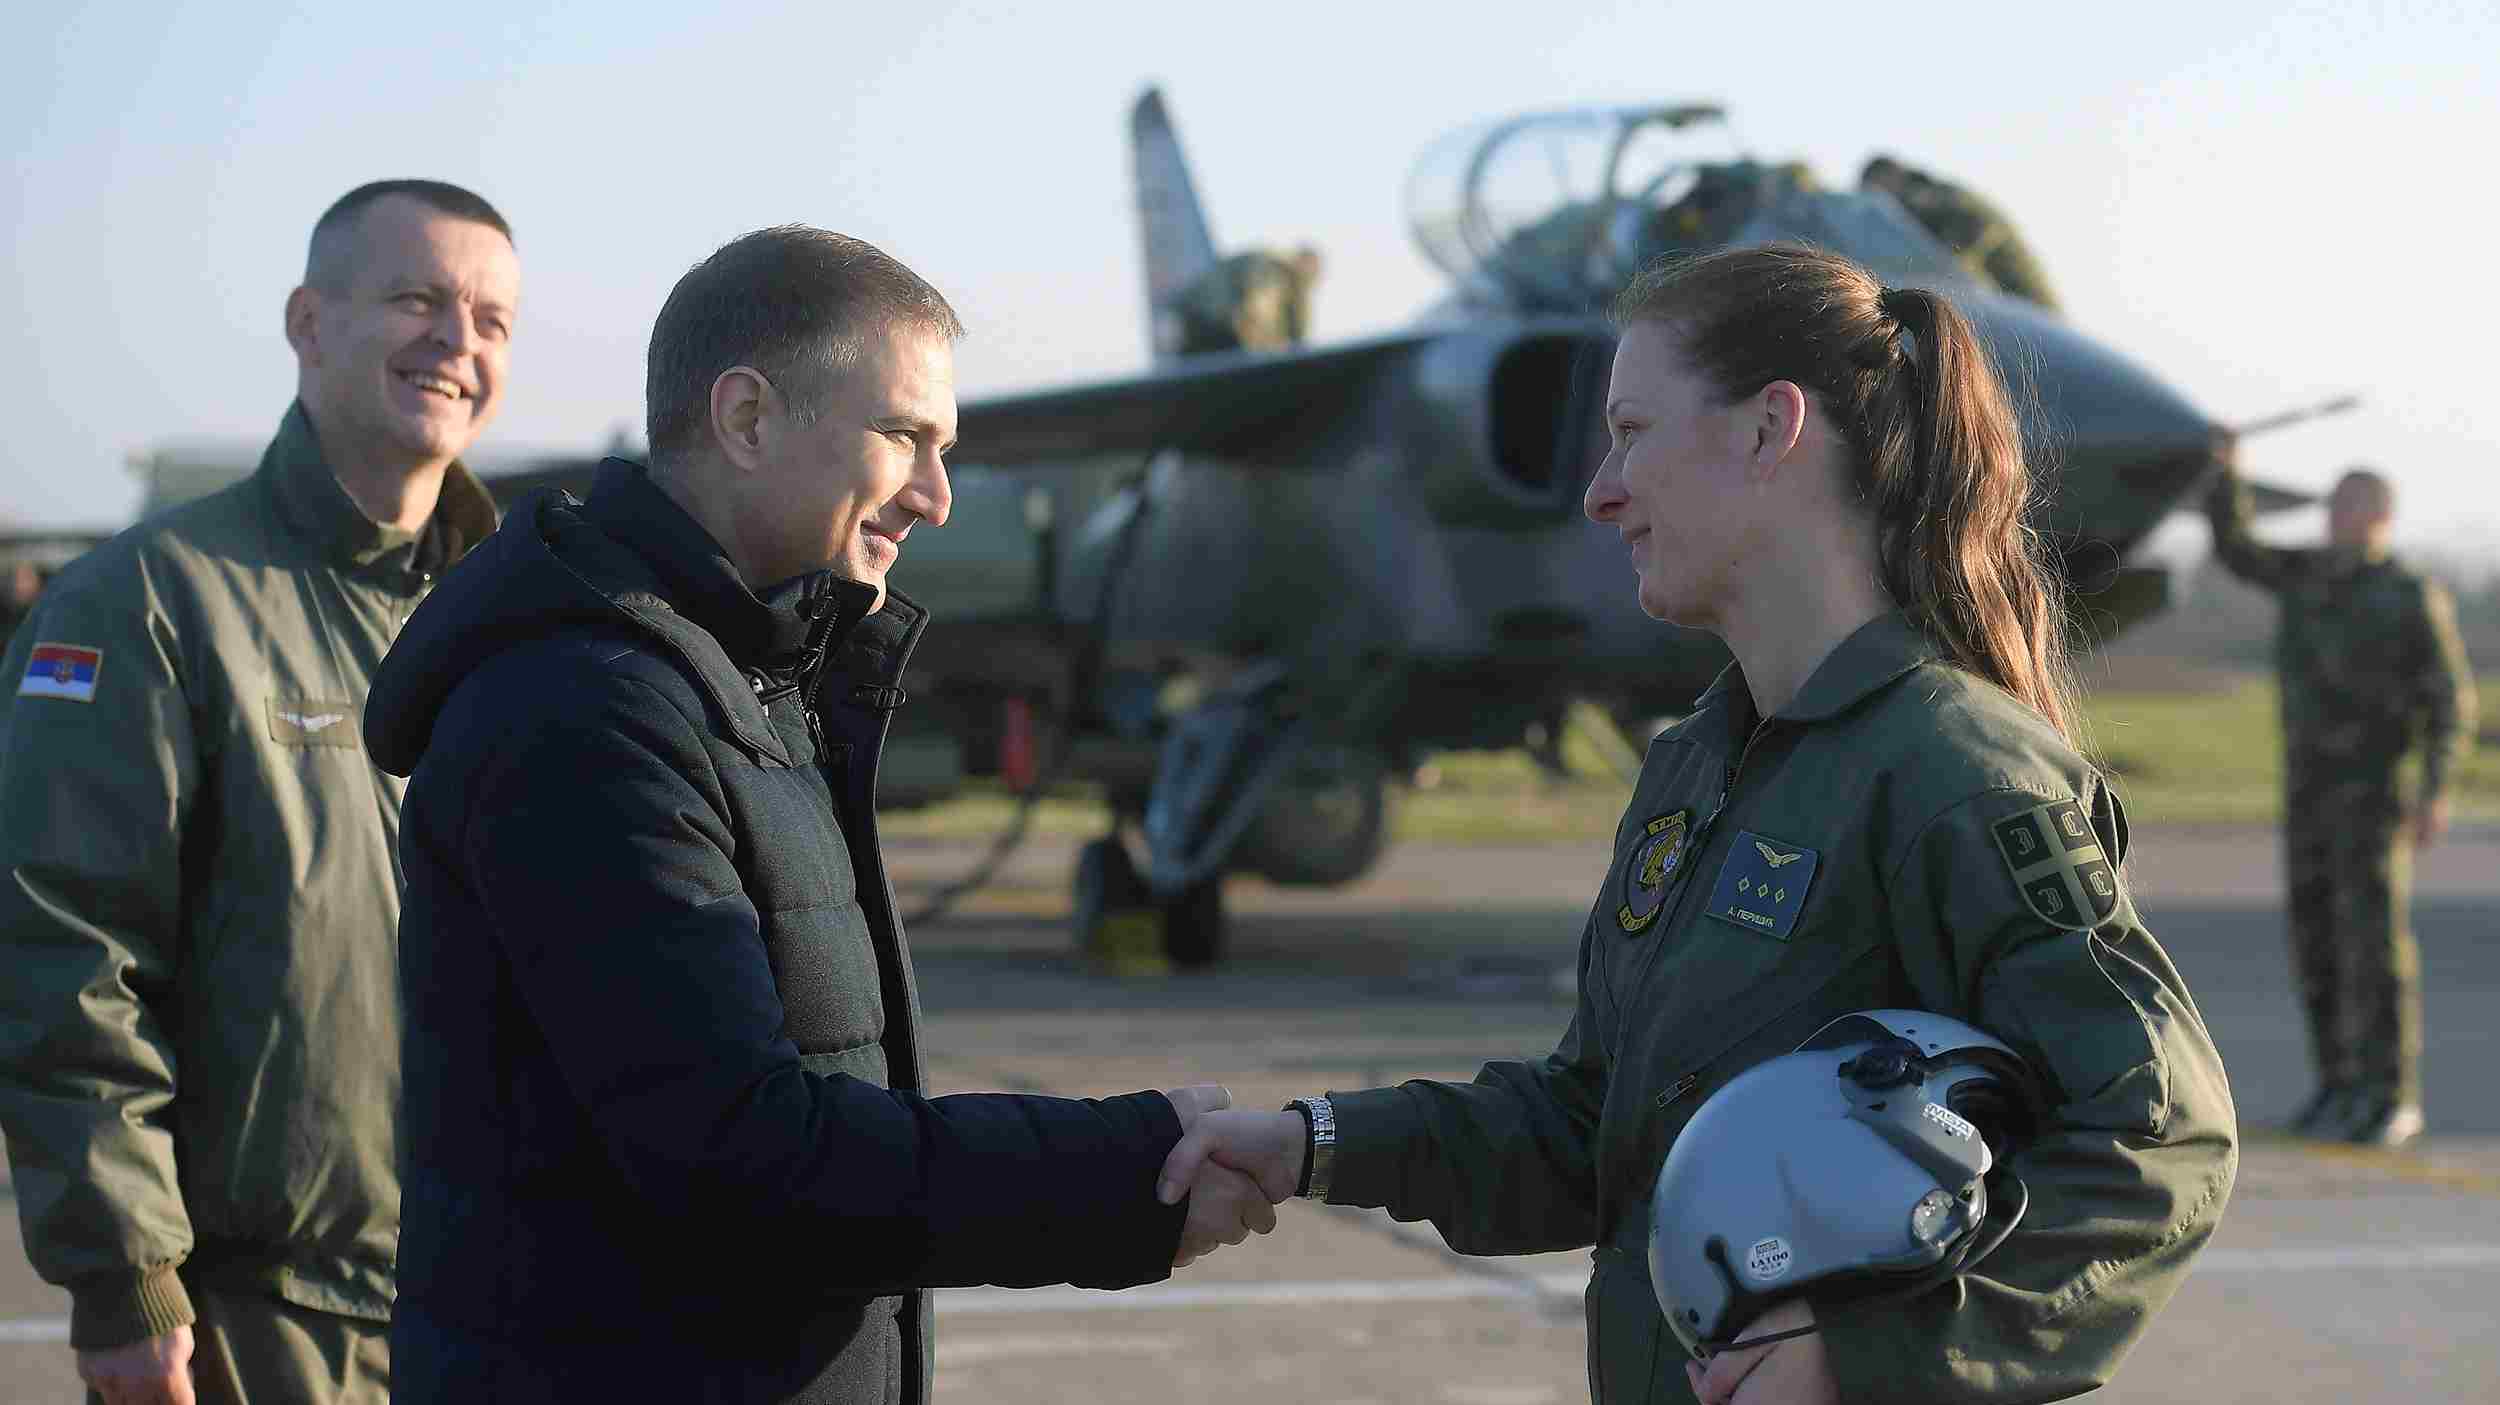 Vojska Srbije dobila prvu ženu pilota jurišnog borbenog aviona "Orao" 1